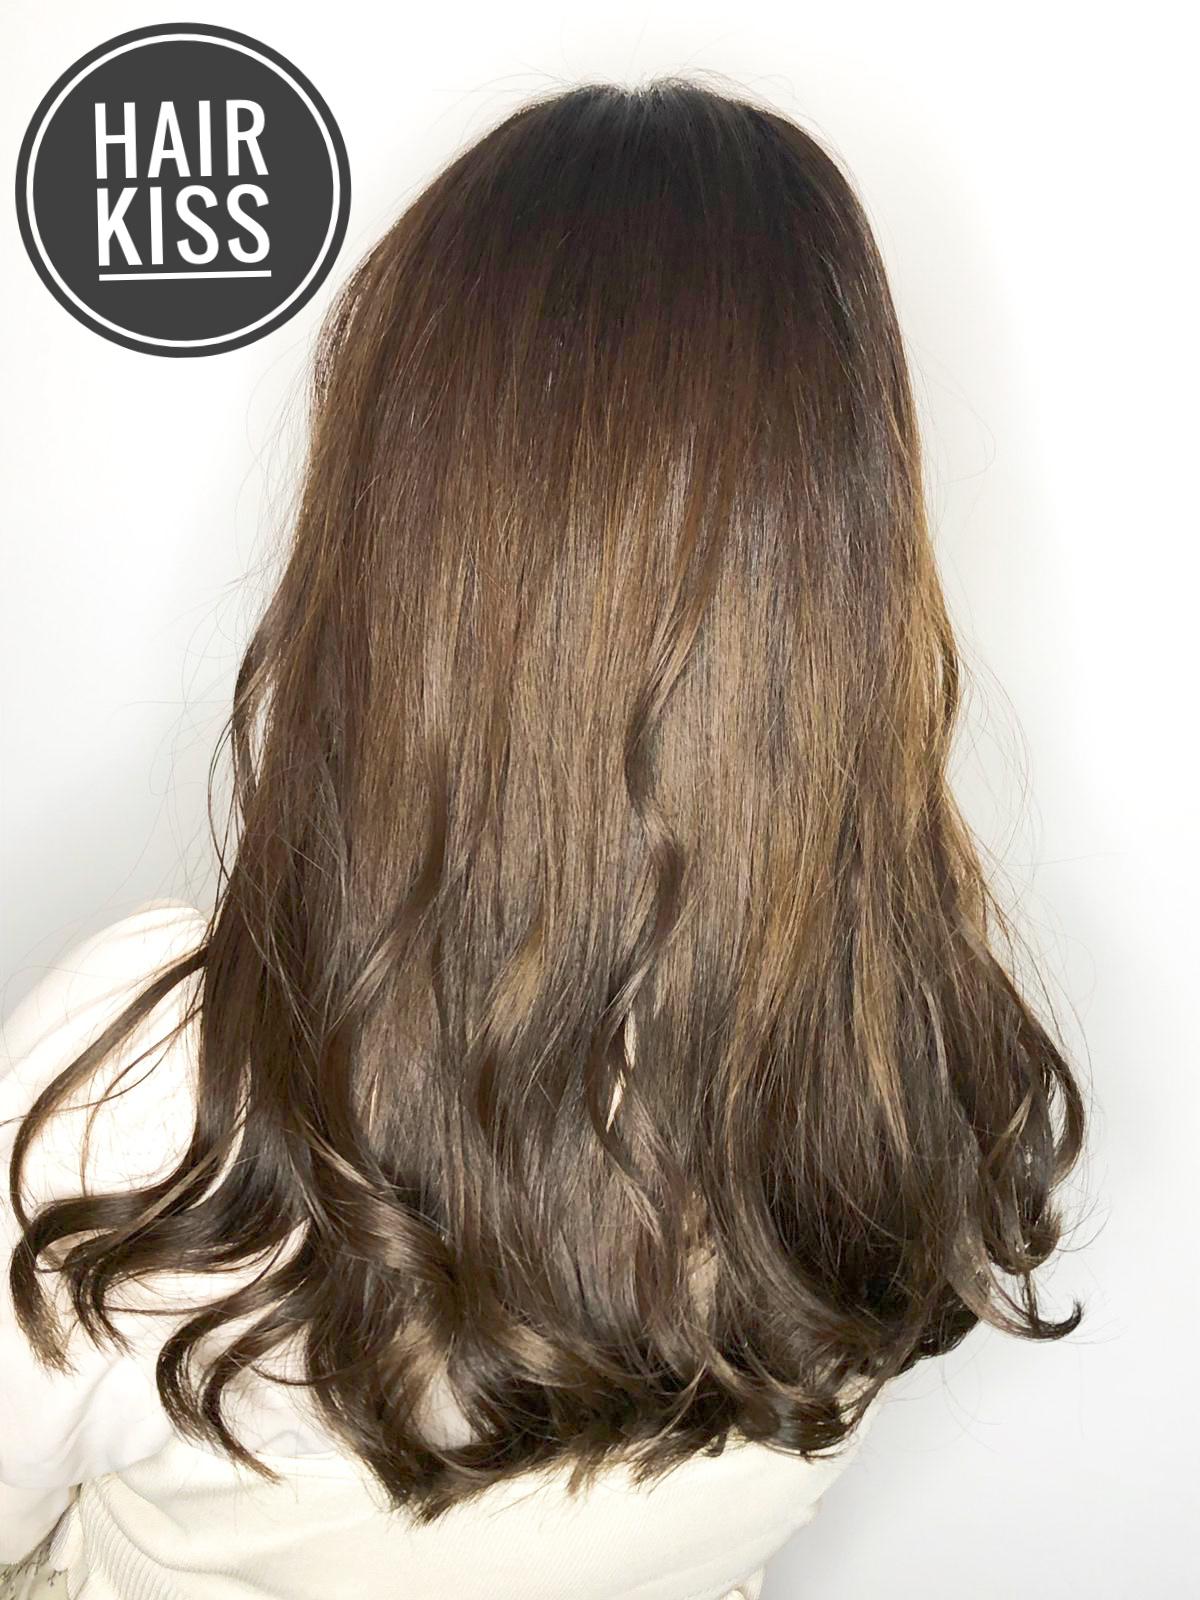 髮型作品参考:Hair kiss ❤️